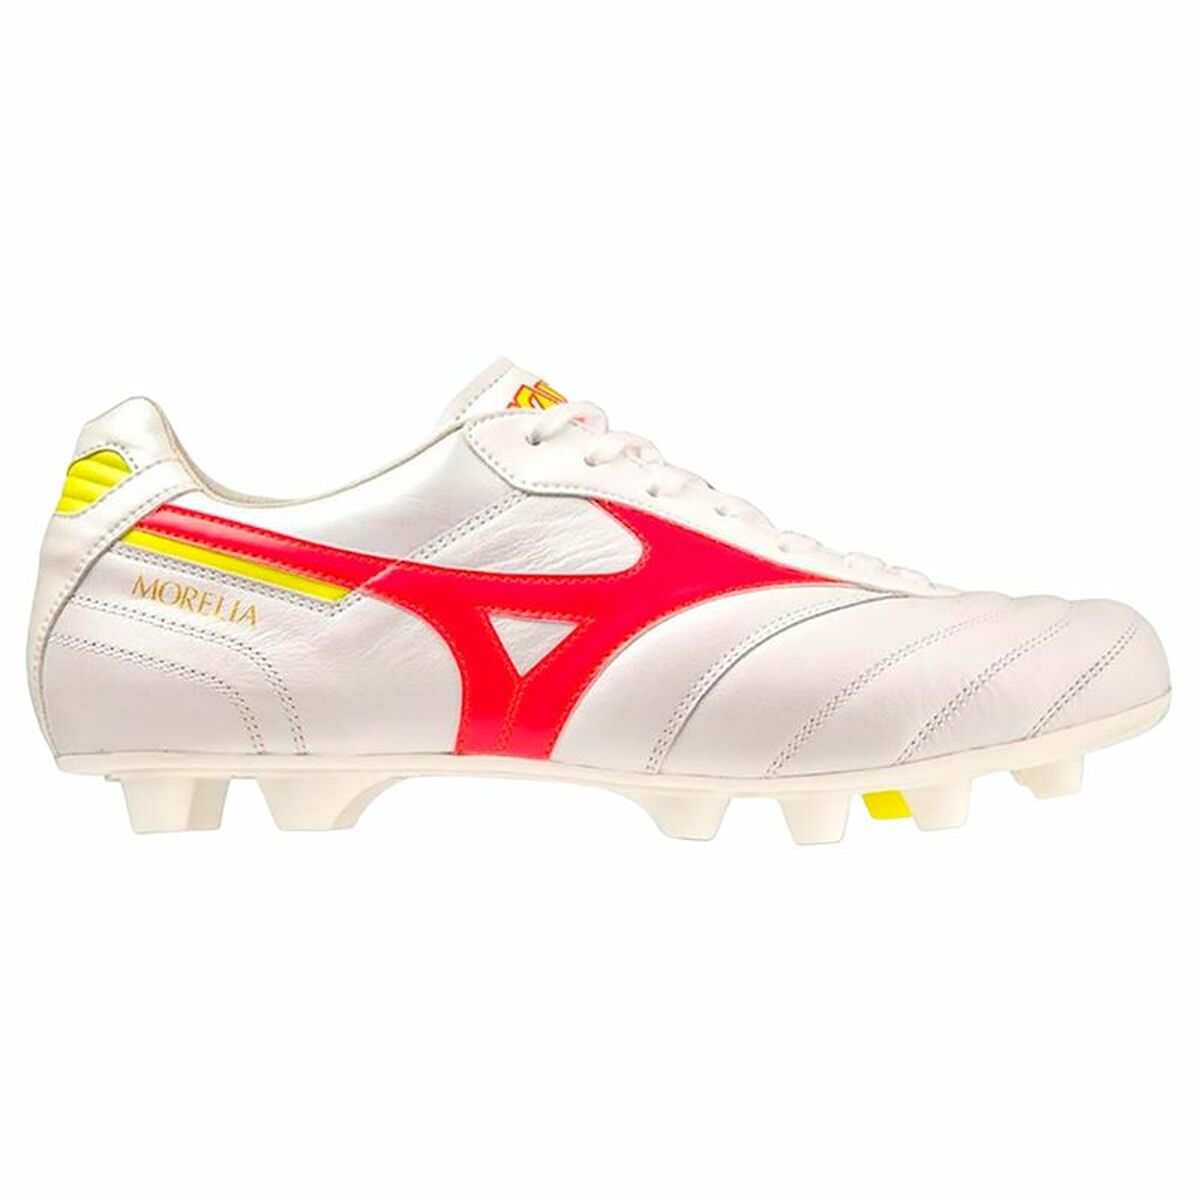 Adult's Football Boots Mizuno Morelia II Elite White